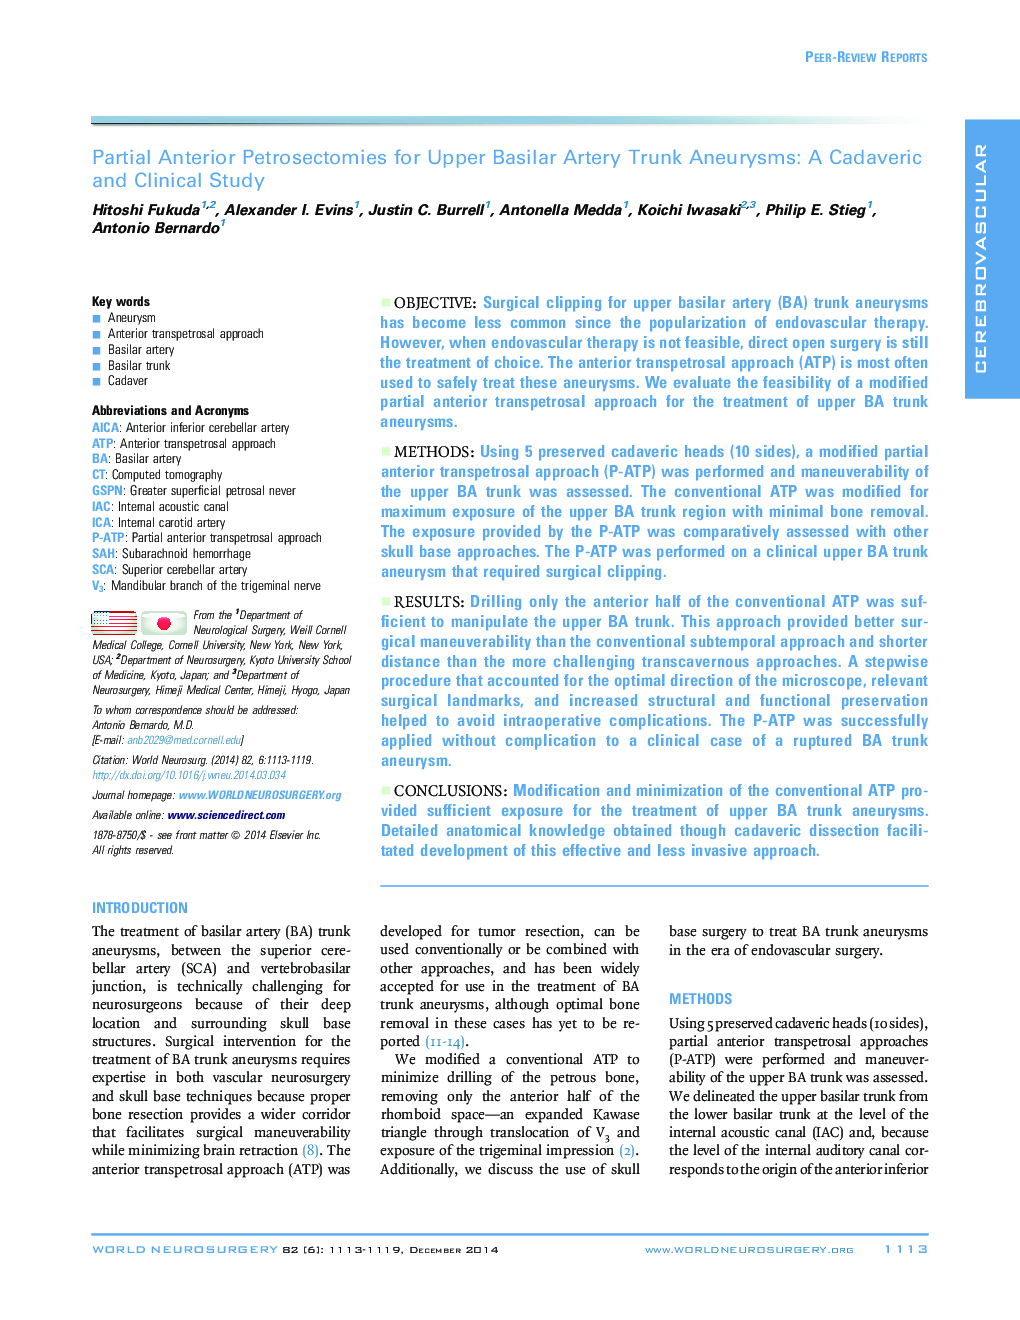 بررسی پراکسیکمی قدامی برای آنوریسمهای ترمینال قدامی باسیار بالا: مطالعه کاداوریک و بالینی 